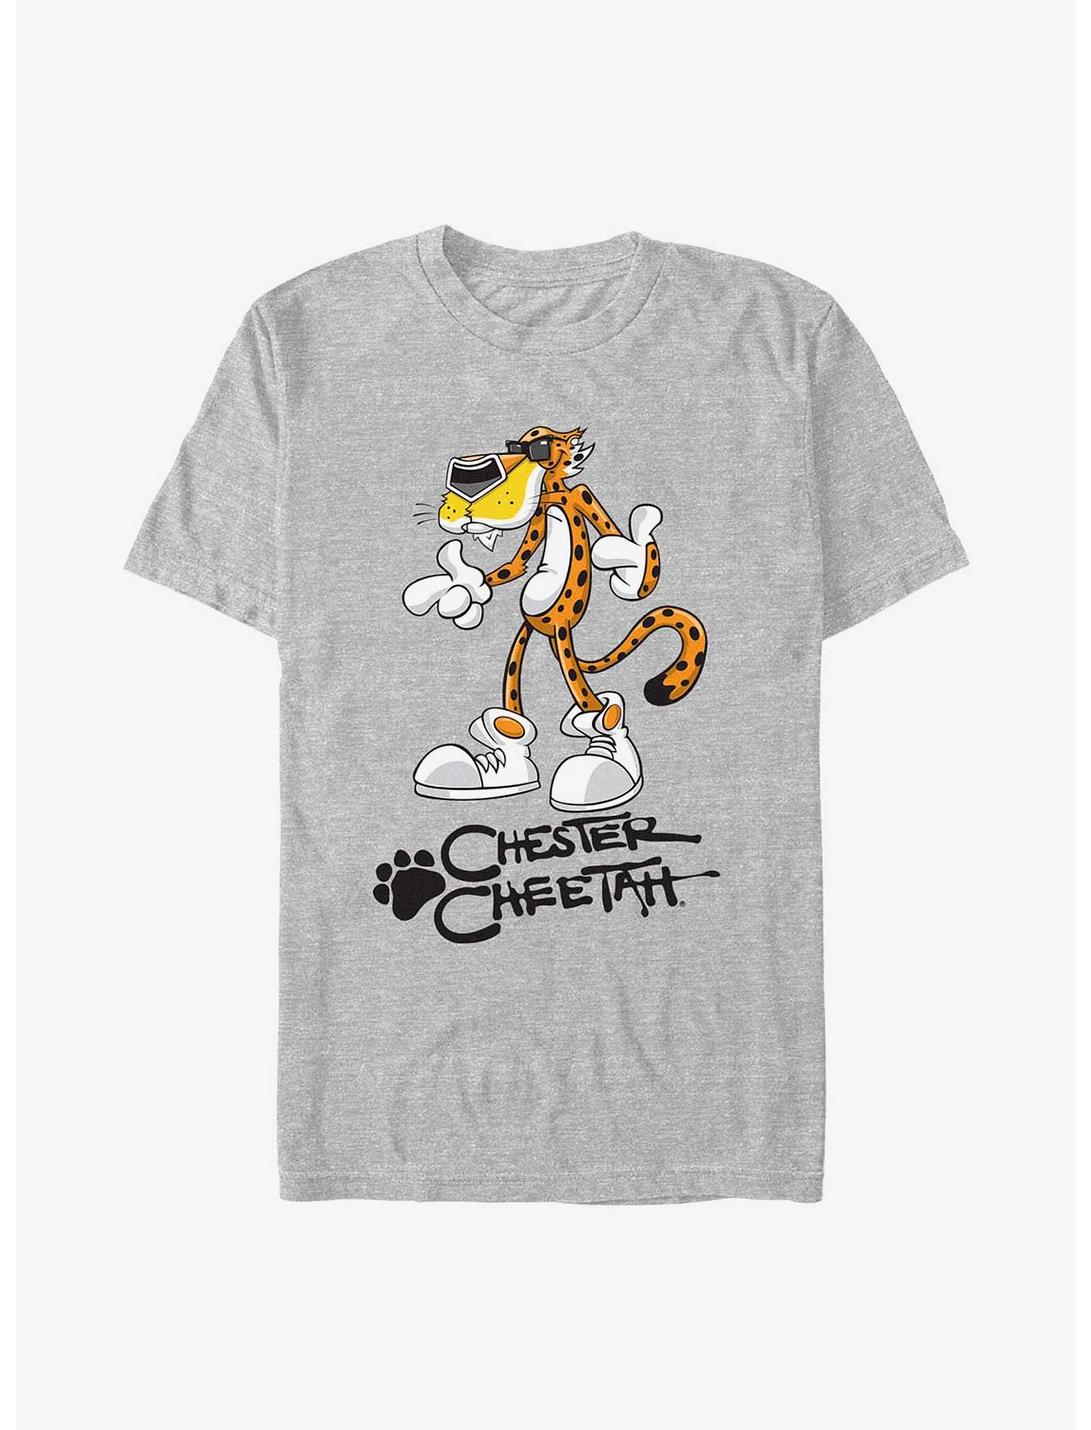 Cheetos Chester Cheetah Stand T-Shirt, ATH HTR, hi-res